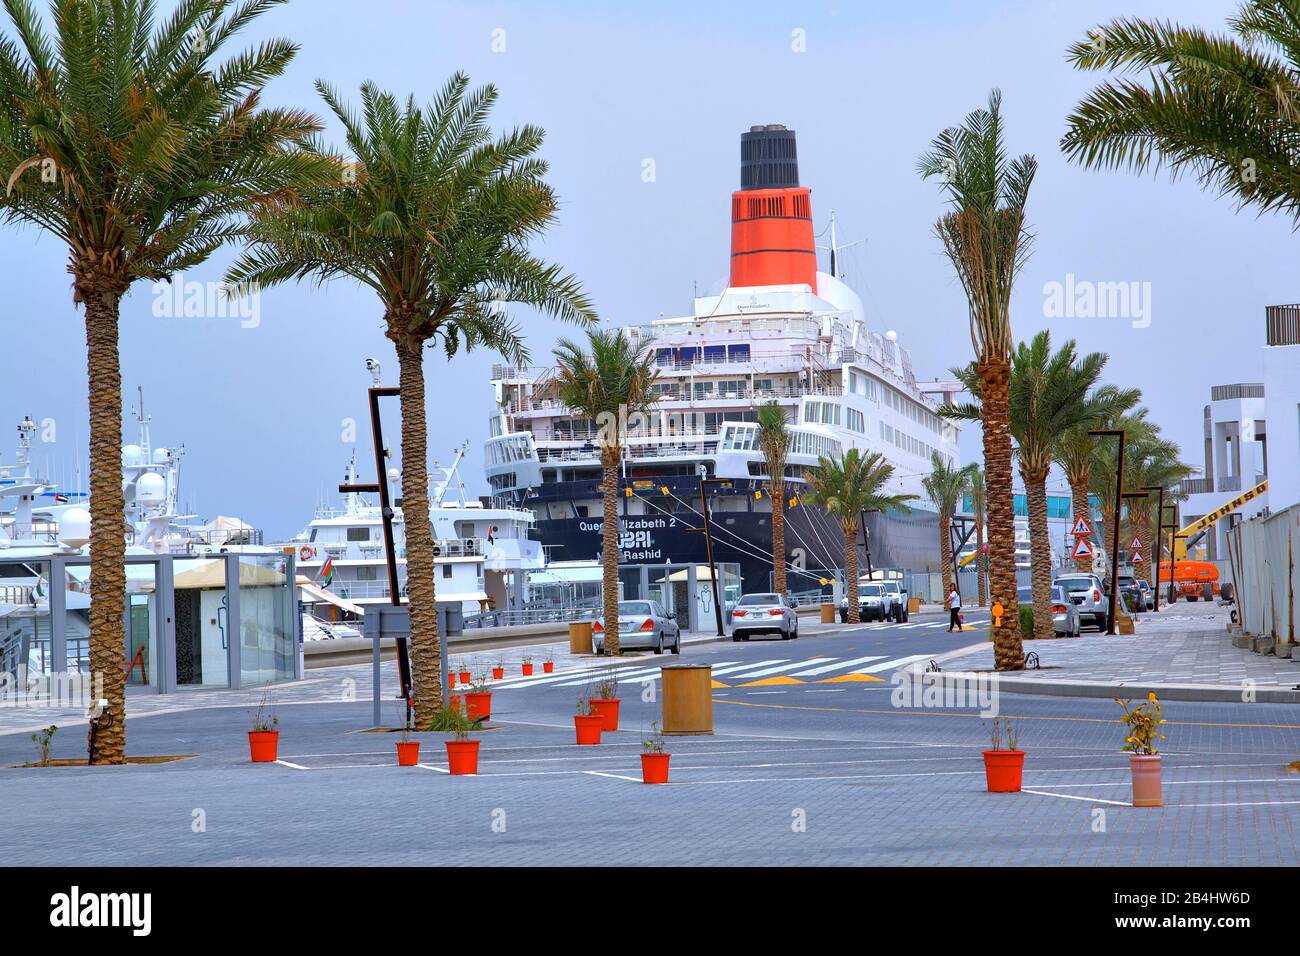 Hotel e nave museo Queen Elizabeth 2 (QE2) al molo, Dubai, Golfo Persico, Emirati Arabi Uniti Foto Stock